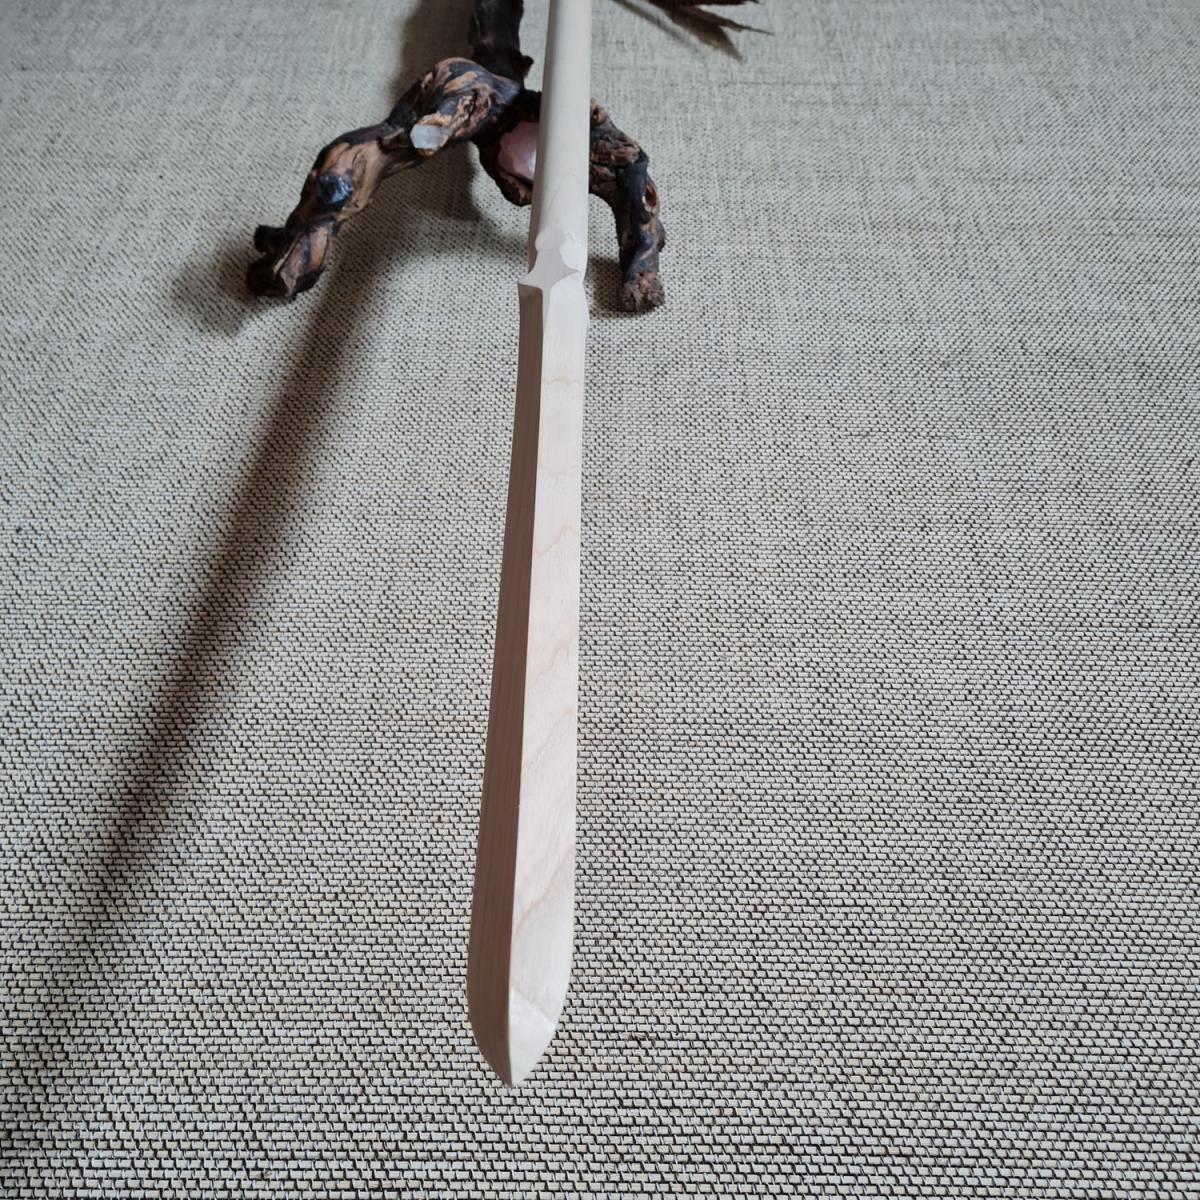 Yari spear made of ash wood - 220 cm ➤ www.bokken-shop.de ✅ suitable for Jigen Ry ✓ Toda-Ryu ✓ Bujinkan ✓ Kendo ✓ Koryu ✓ Your Budo dealer!